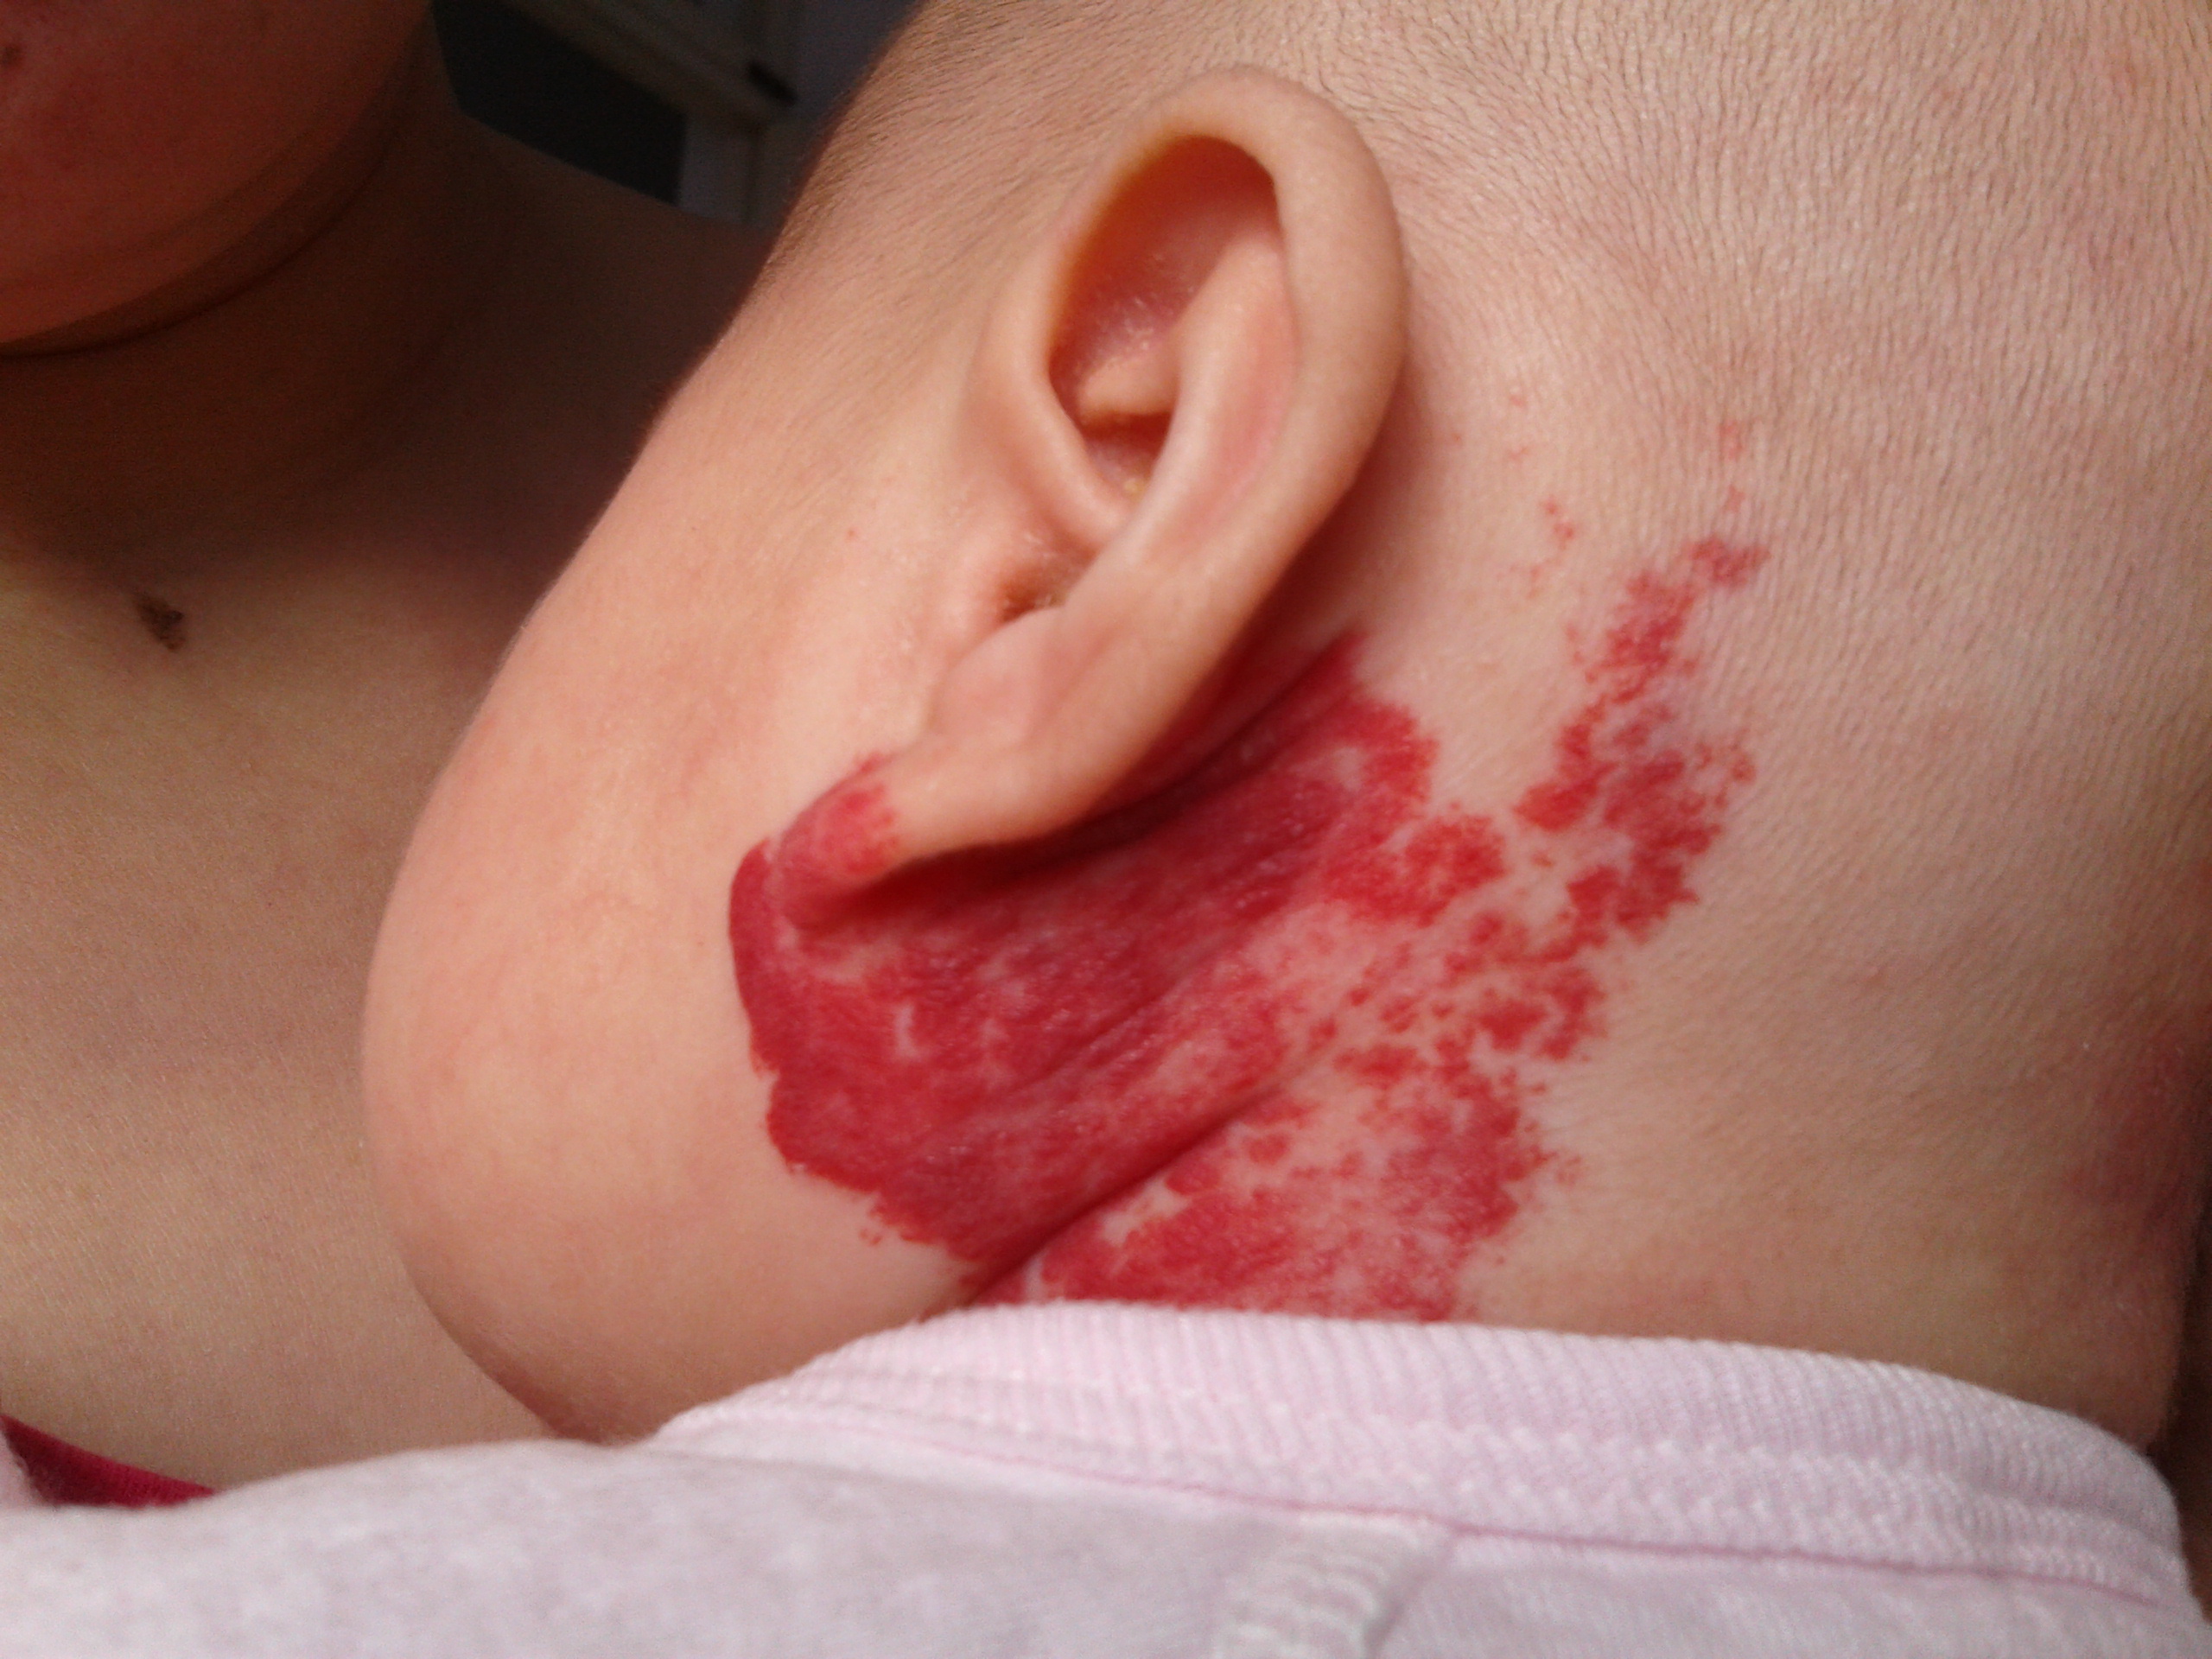 后变大,变红,变深,在当地医院诊断为血管瘤,可能是草莓状毛细血管瘤